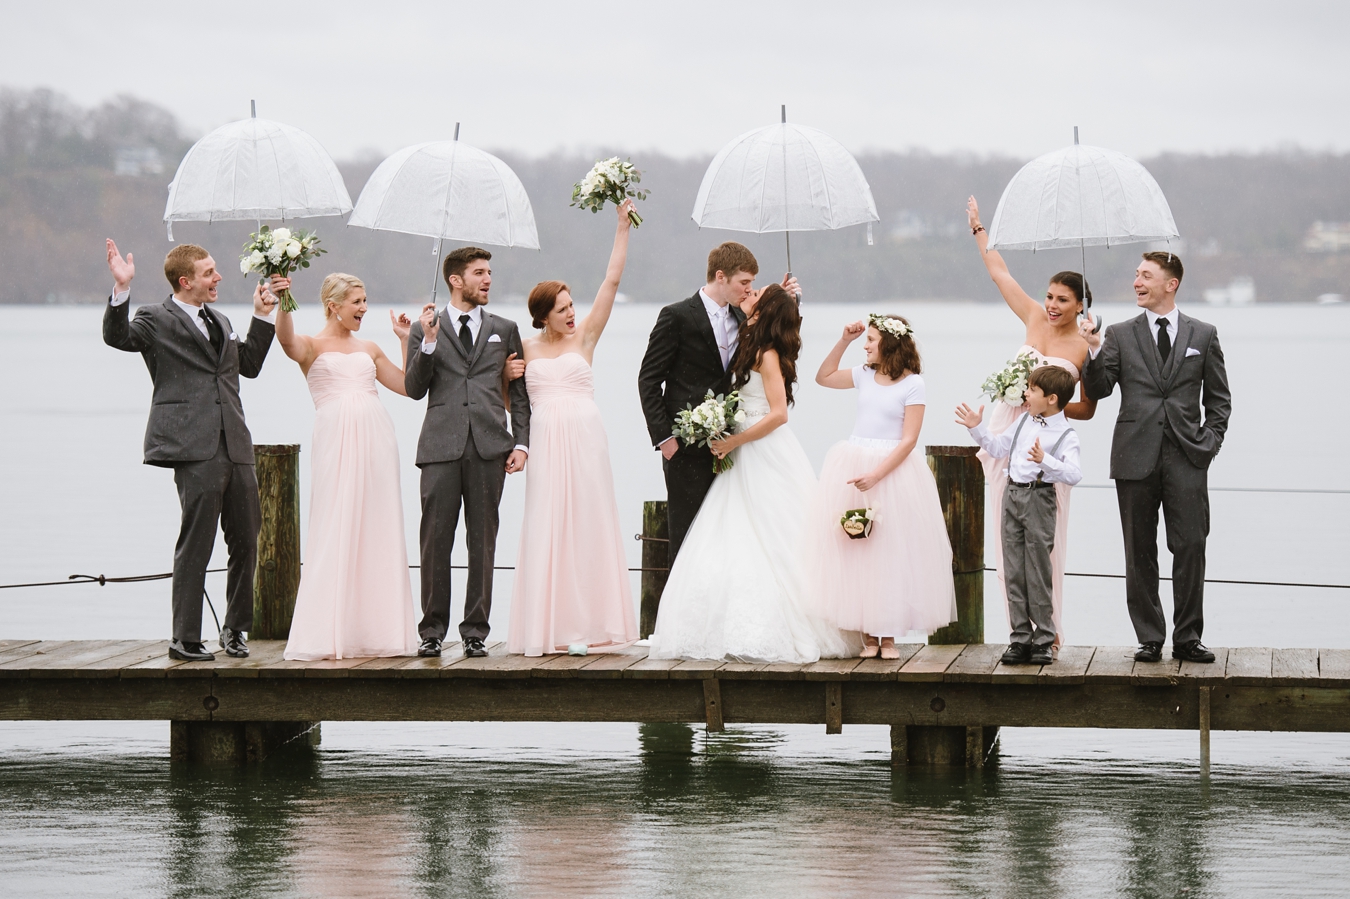 Rainy Day Umbrella Wedding Inspiration in Sherwood Forest, Maryland | Natalie Franke Photography